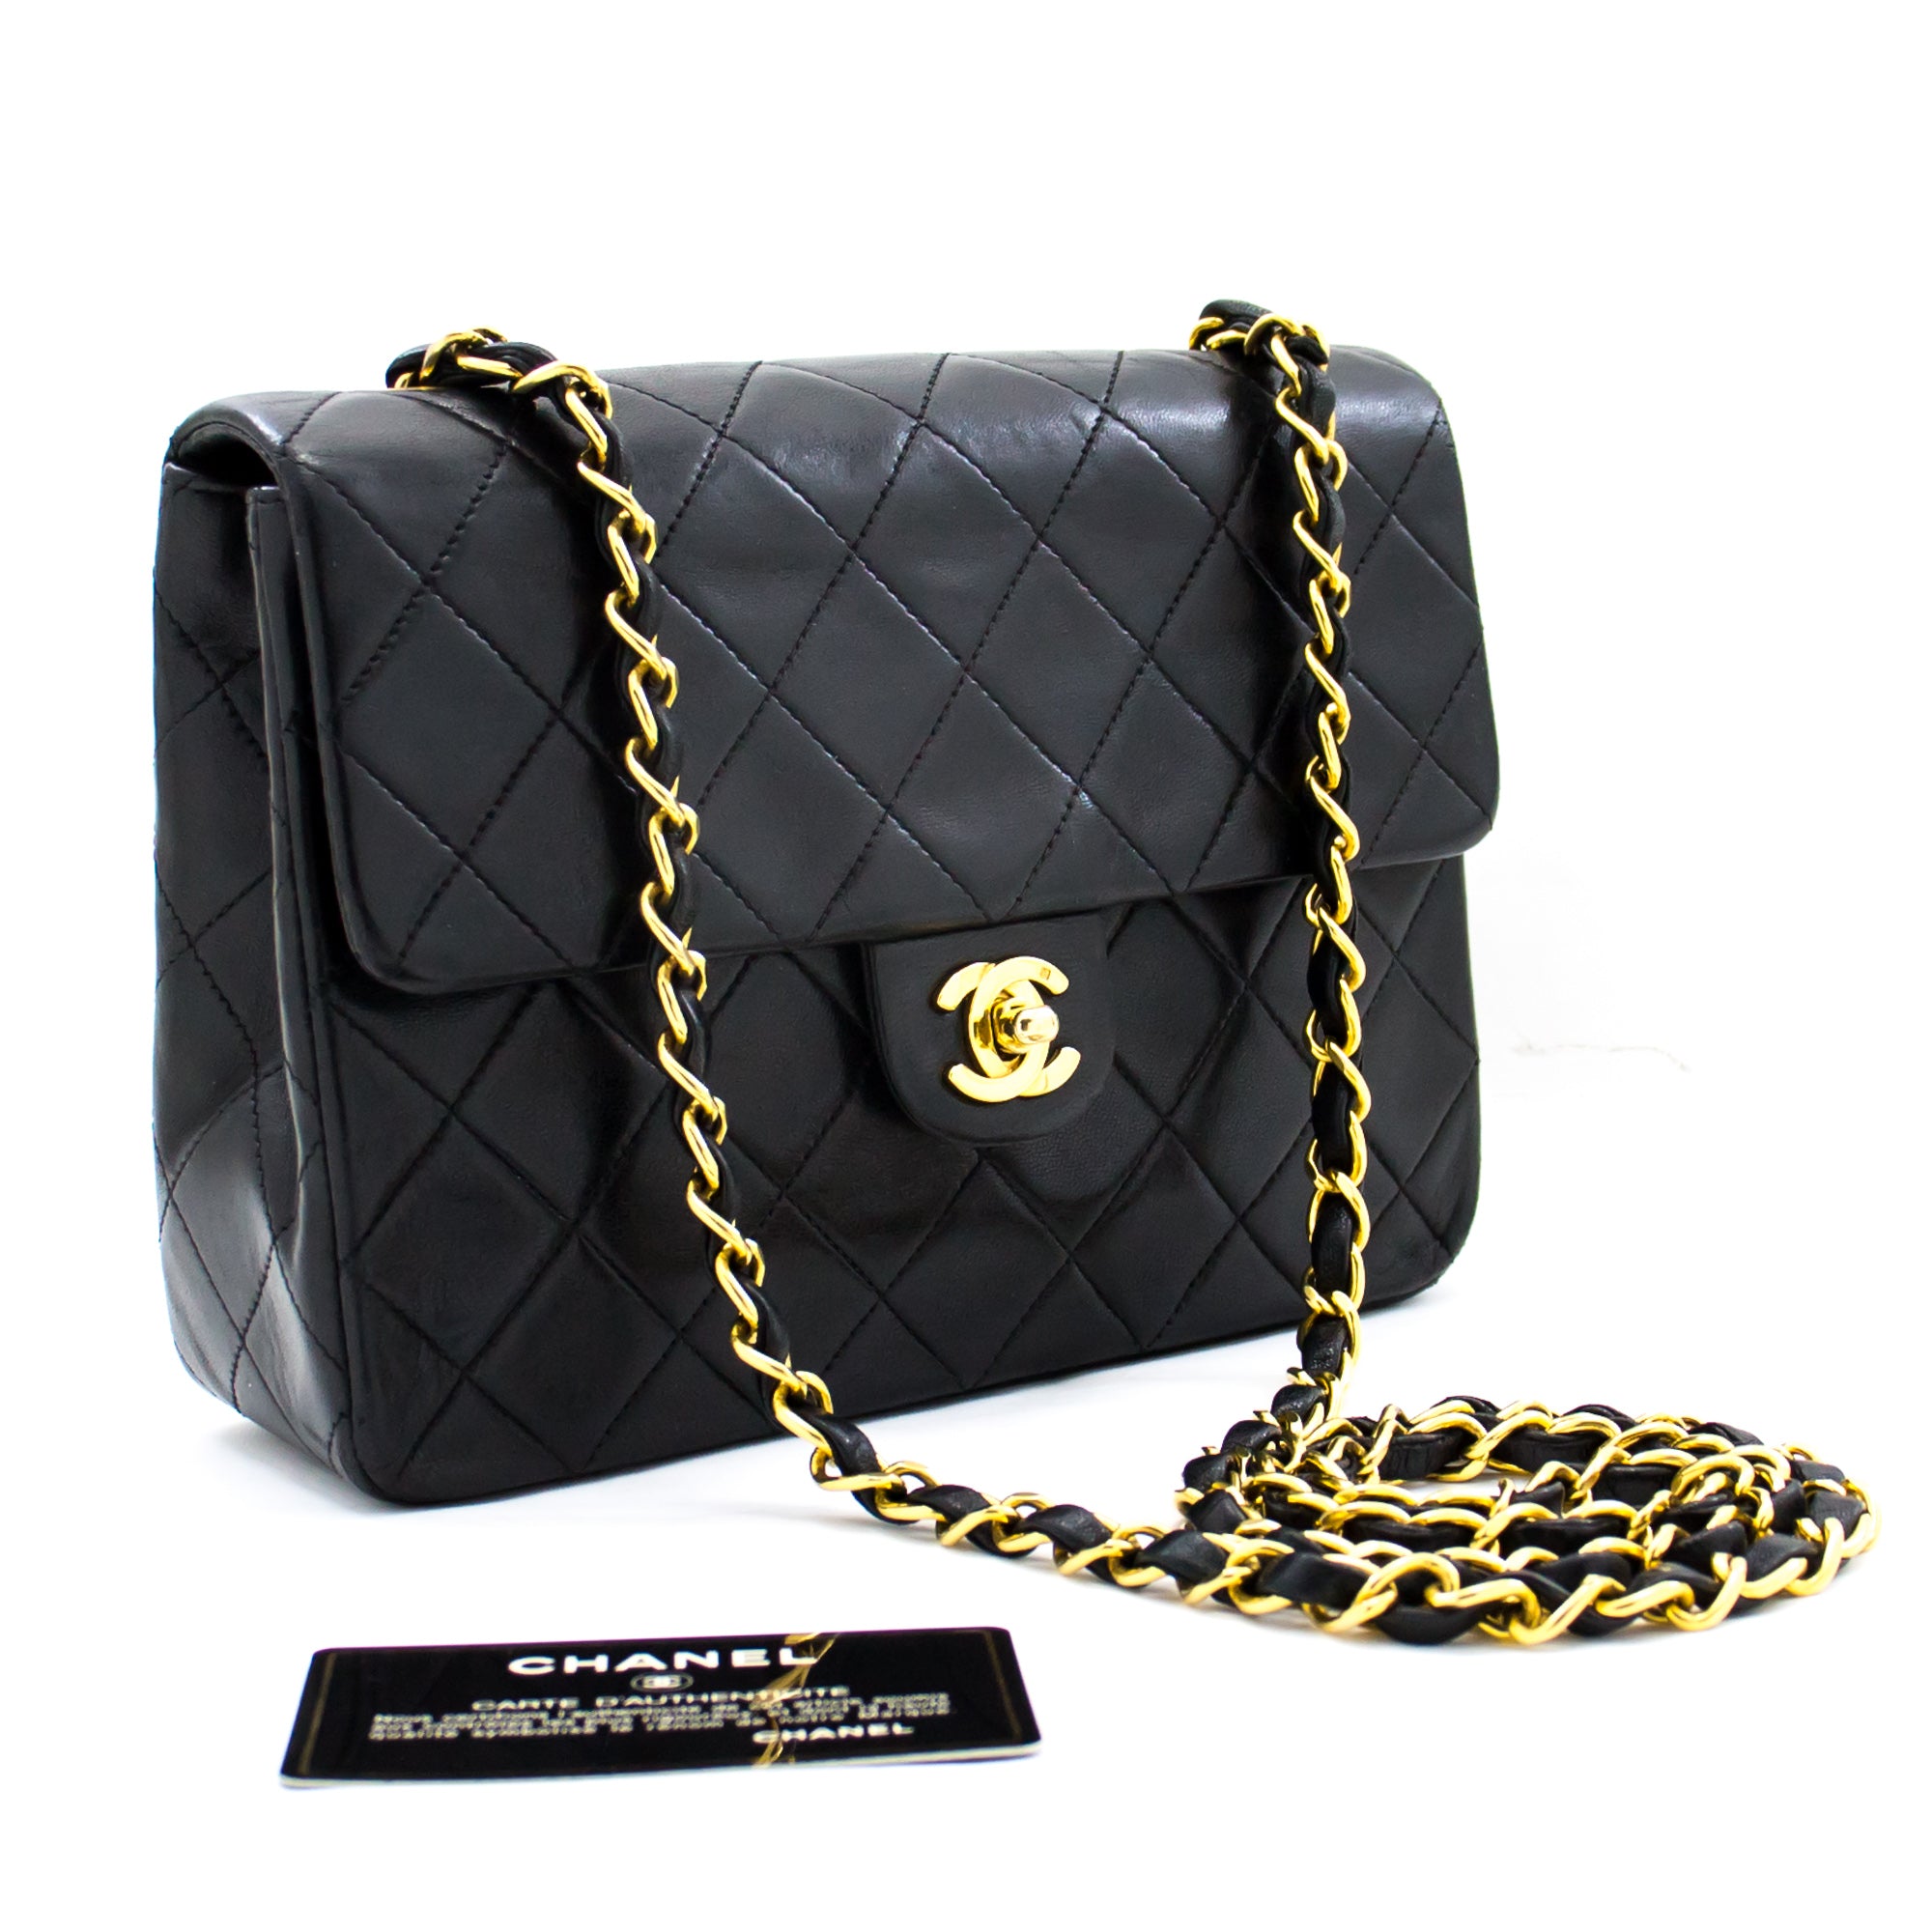 Small Chanel Bag Crossbody Hot Sale 51 OFF  wwwvescir